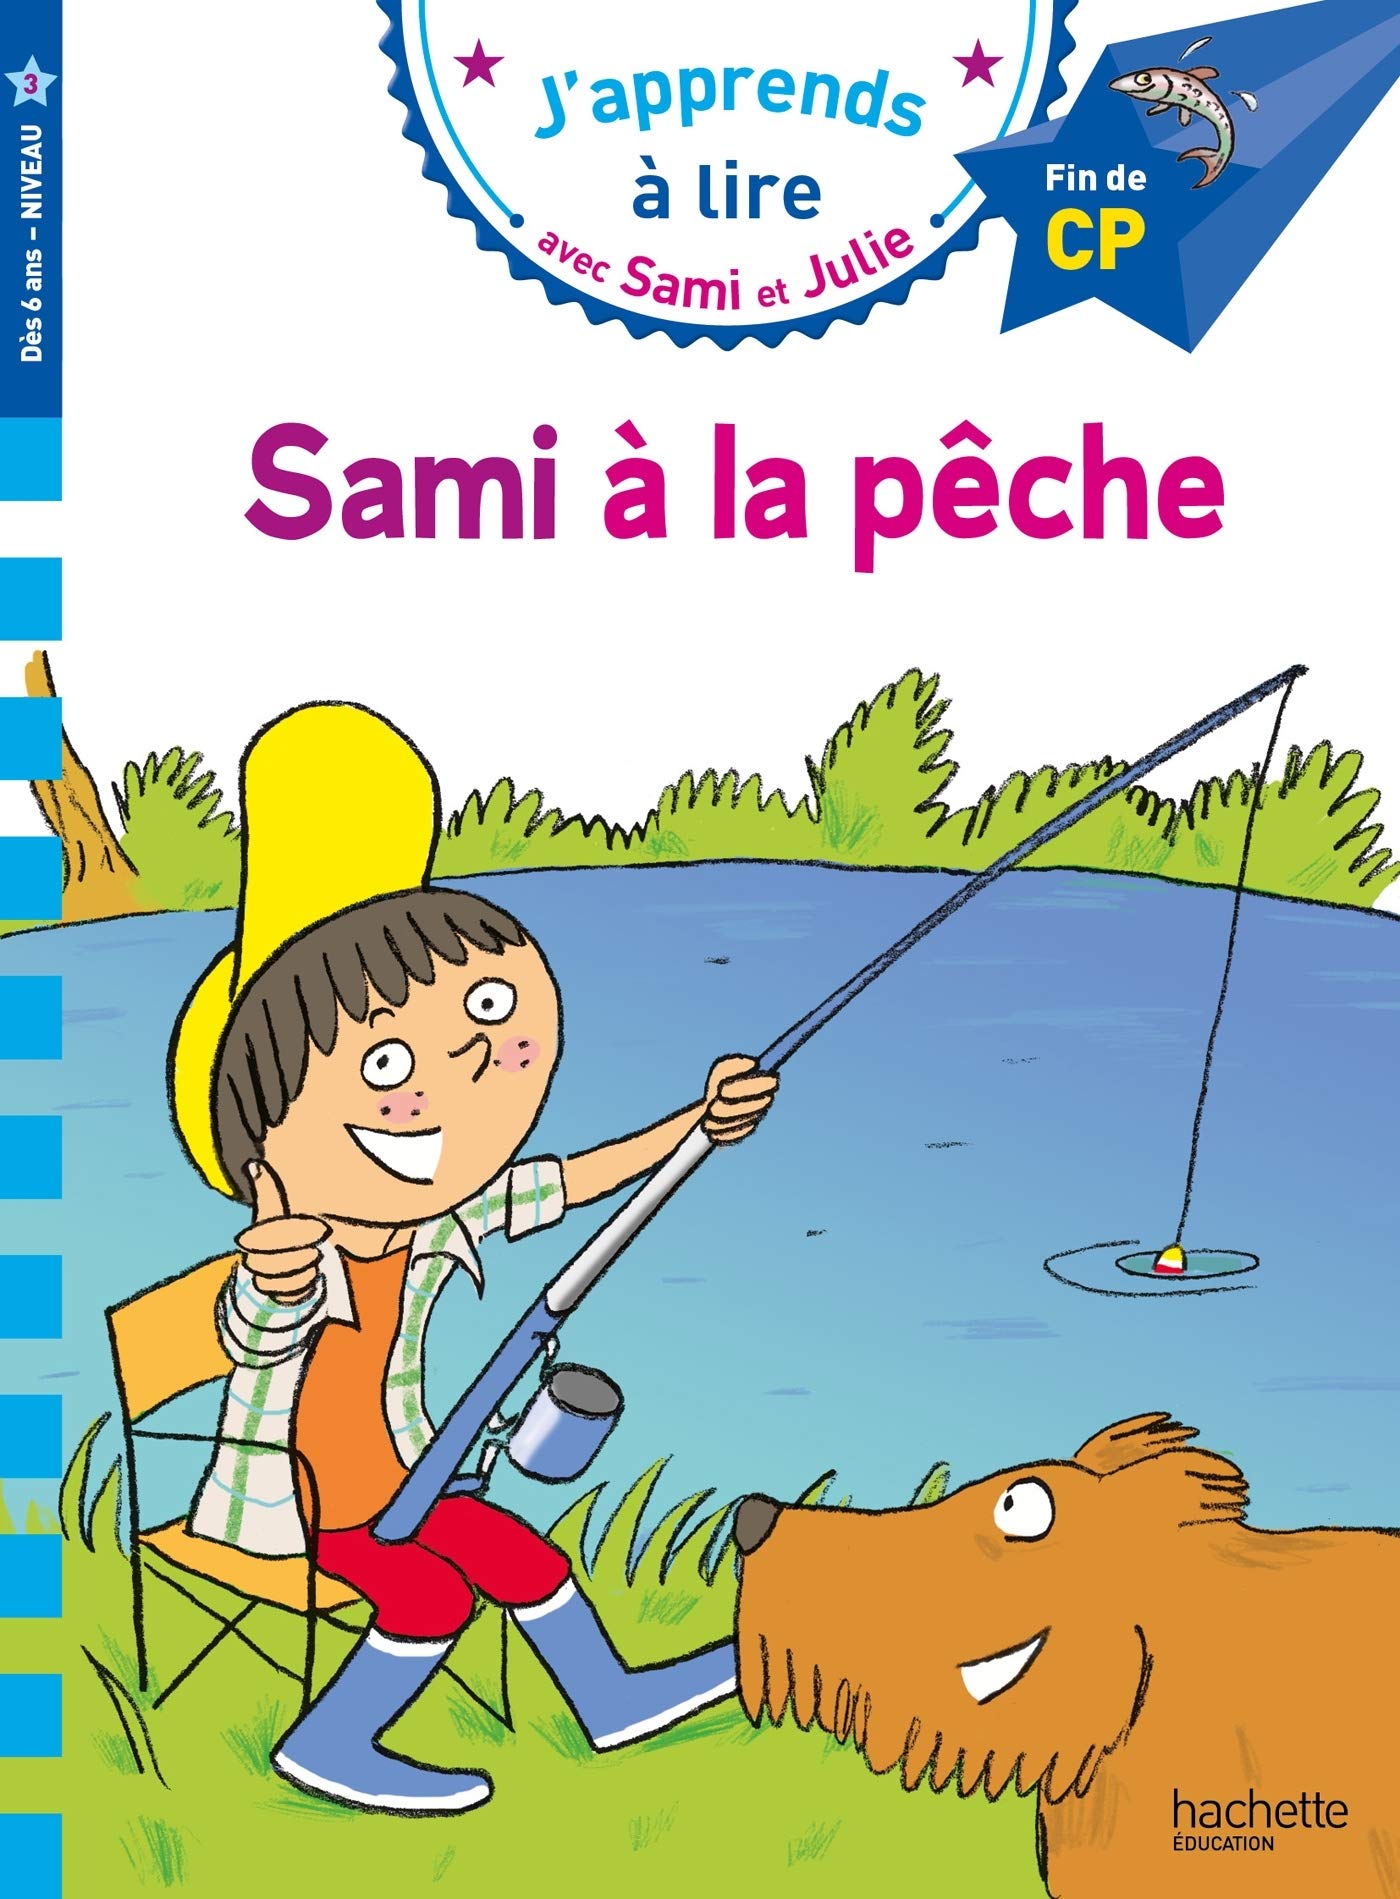 J'apprends a Lire Avec Sami et Julie 3: Sami à la Pêche fin de cp